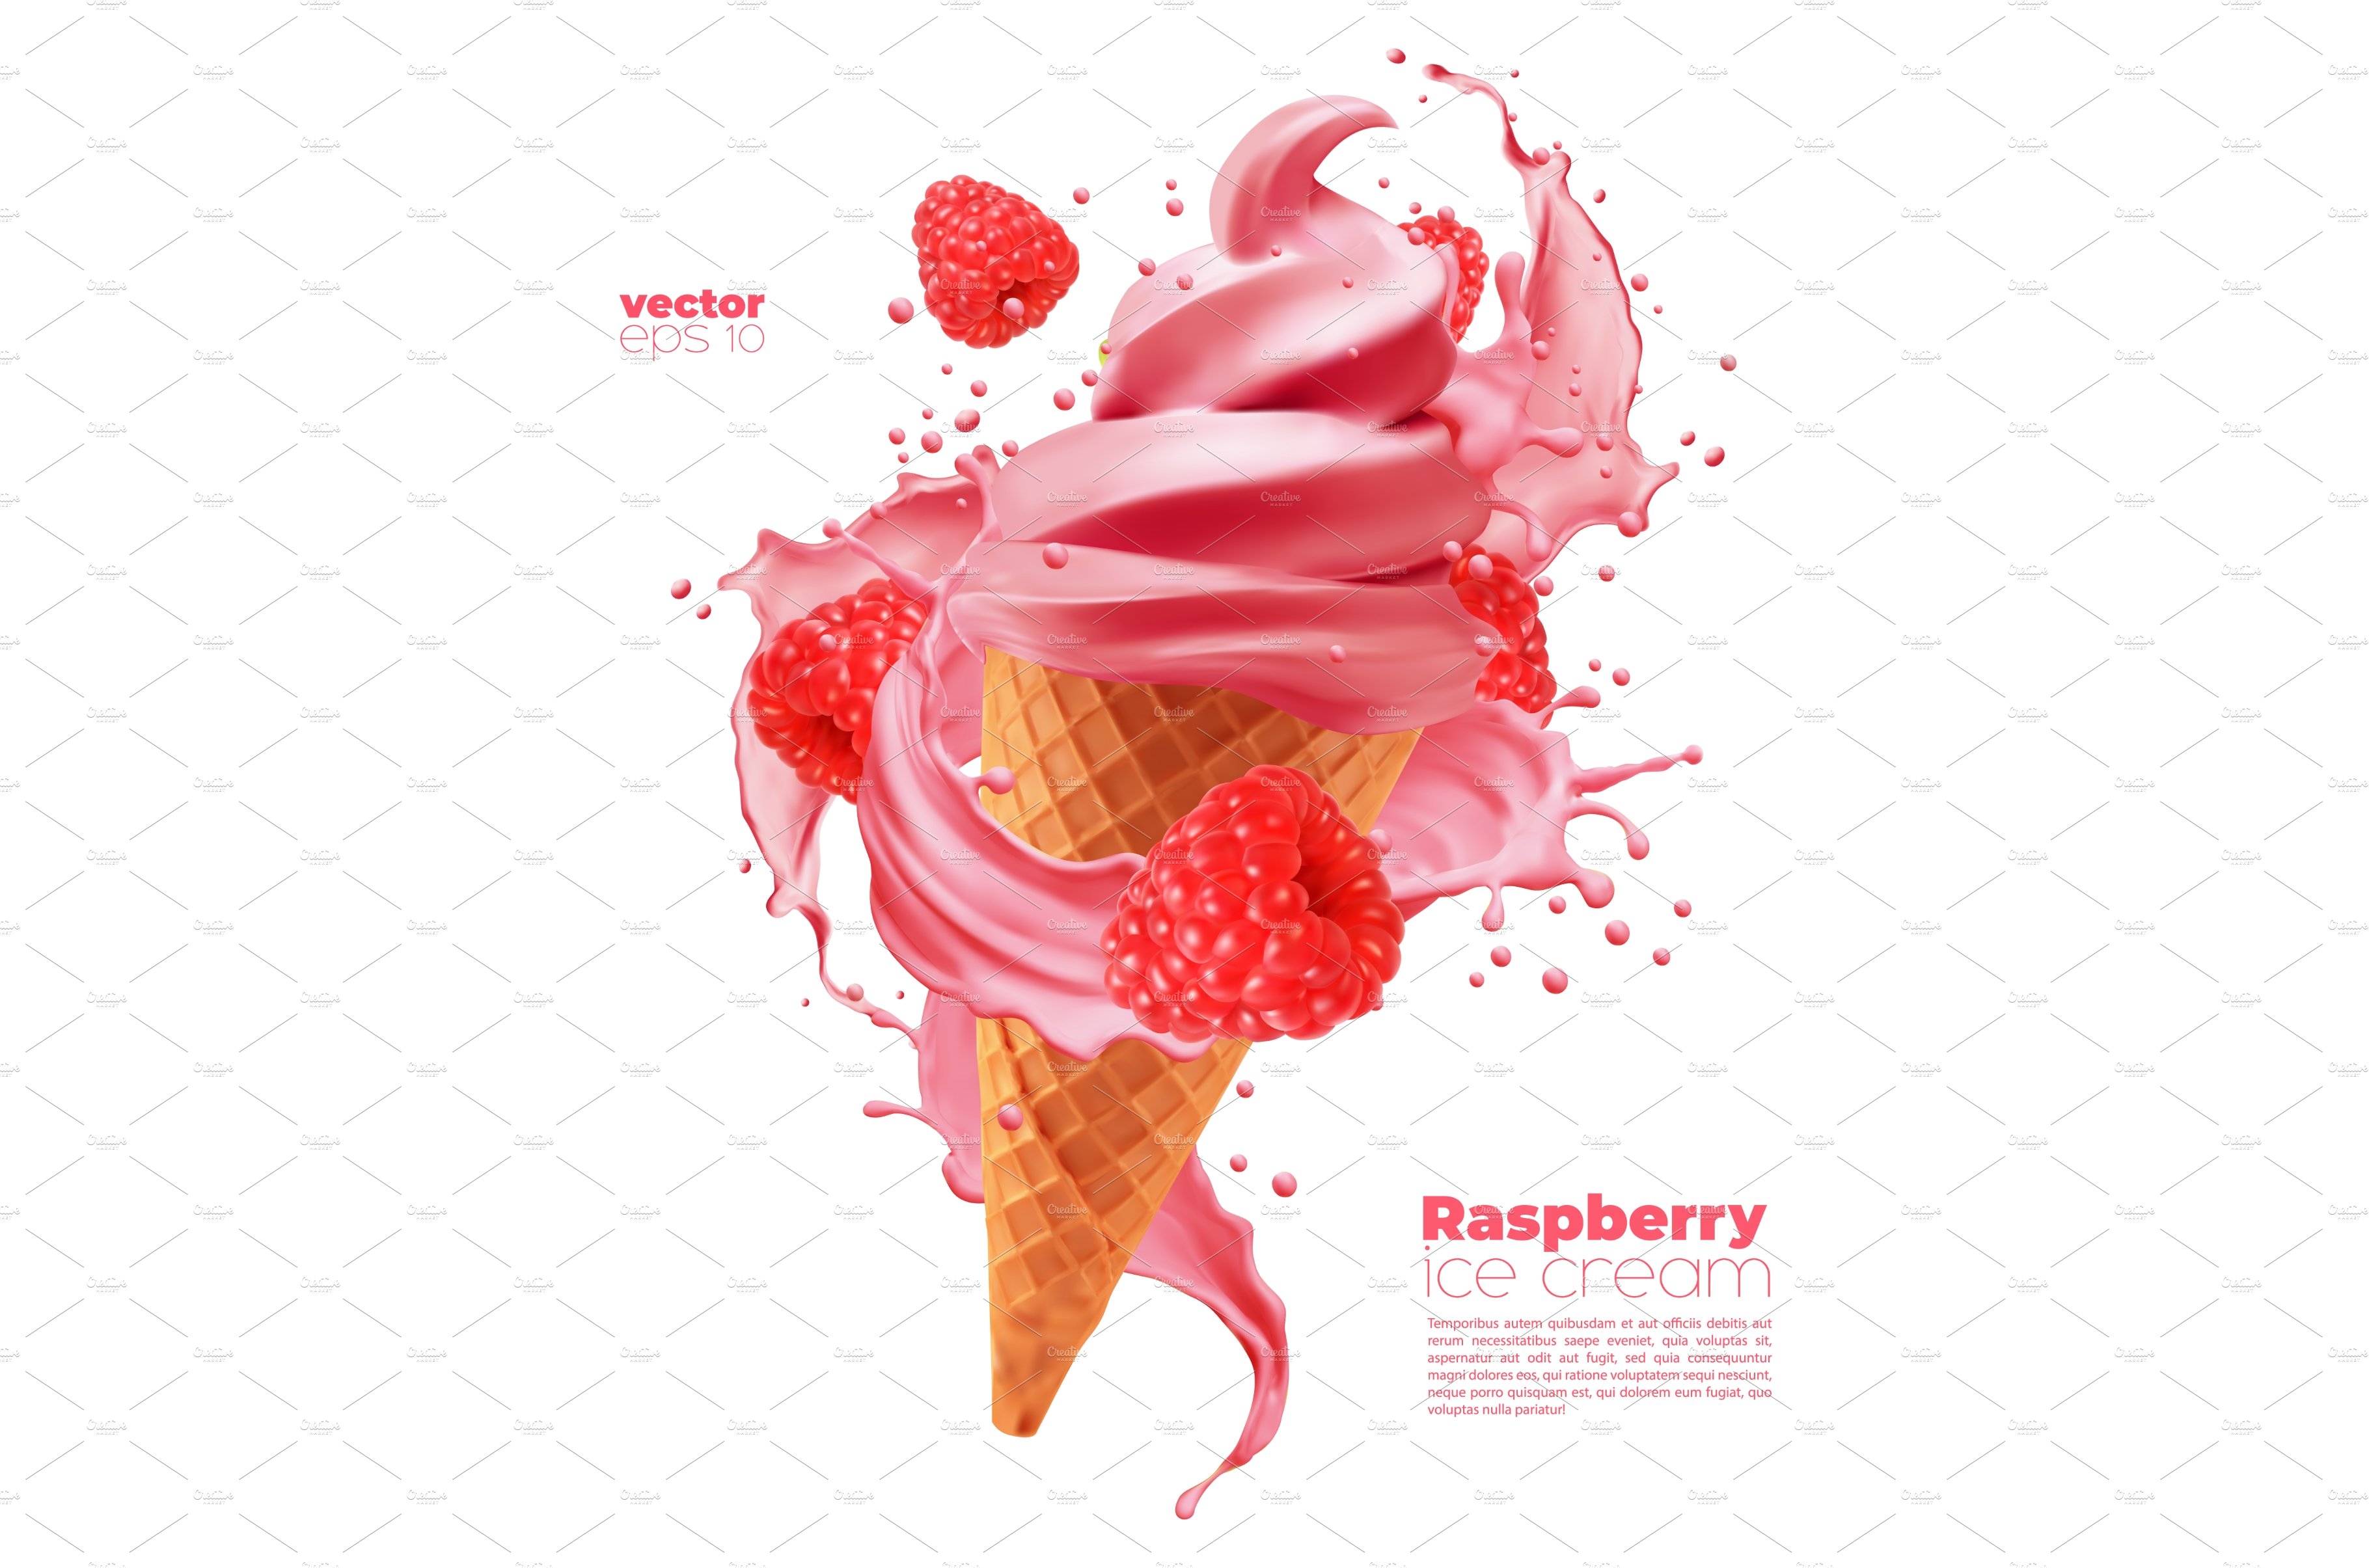 Isolated raspberry ice cream cone cover image.